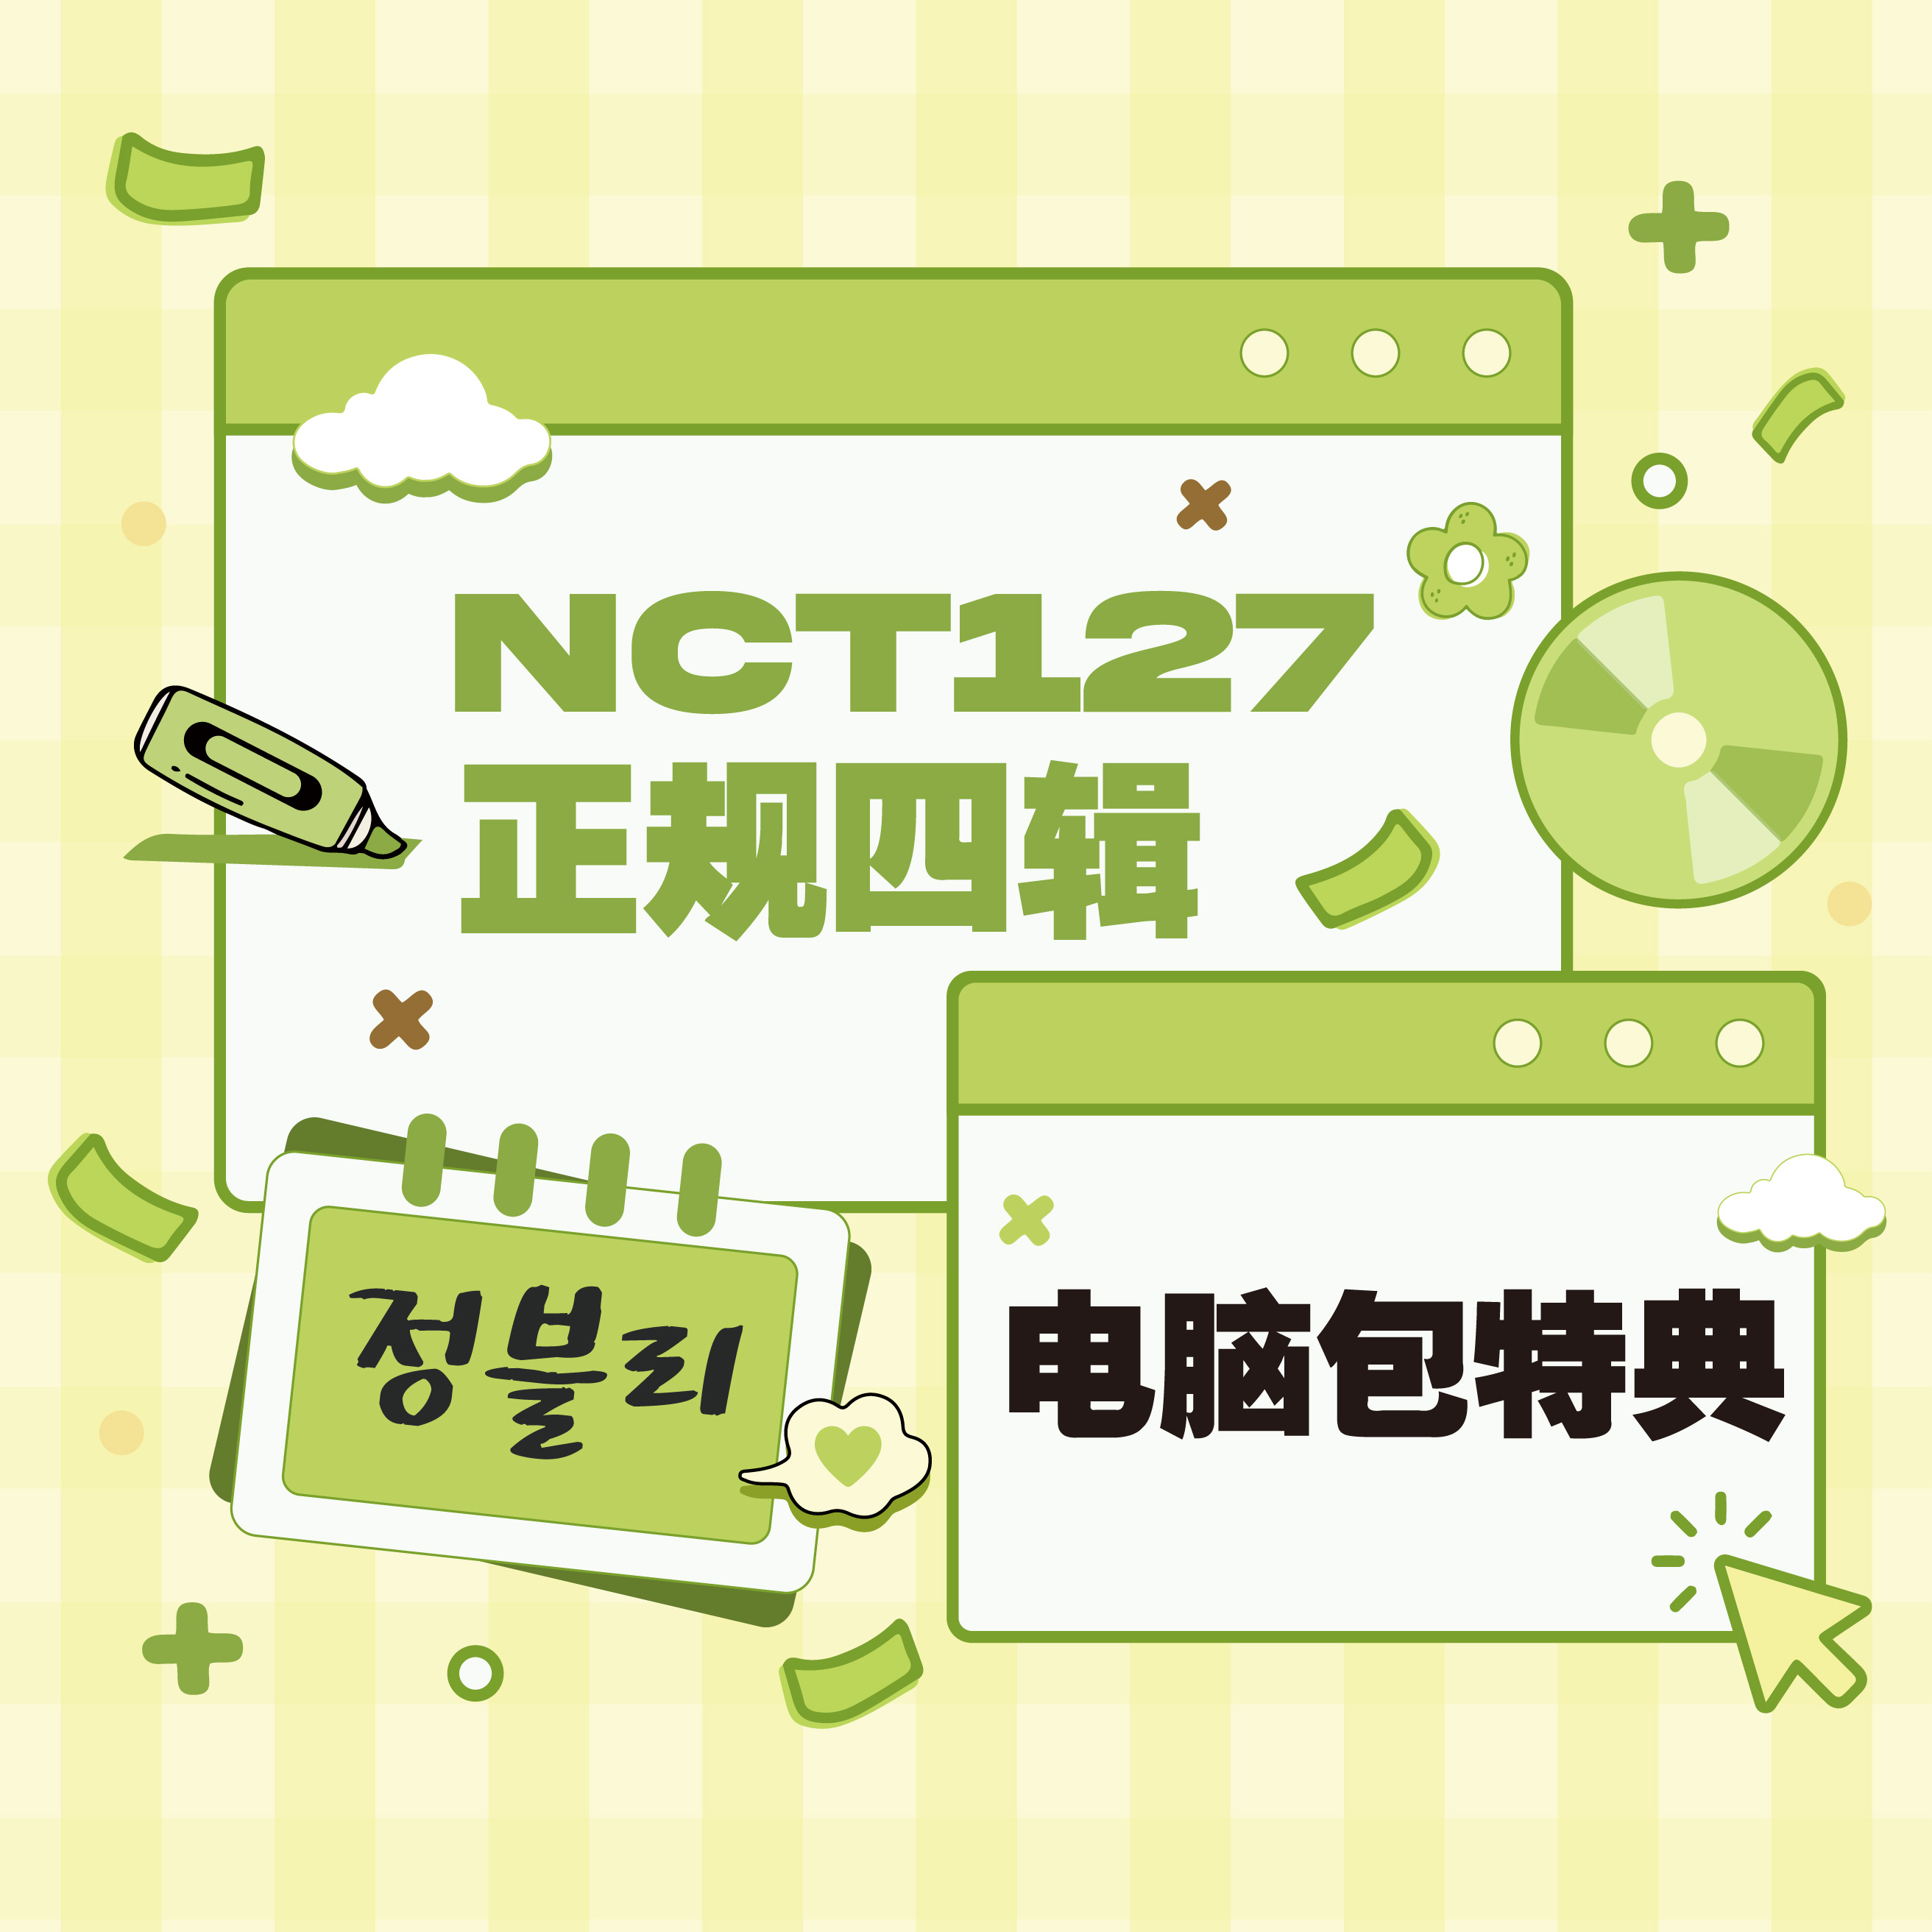 [全款 电脑包 特典专] NCT 127 - 正规专辑 4辑 [질주 (2 Baddies)] (Photobook Ver.) (随机版本)_金廷祐吧JungWooBar 